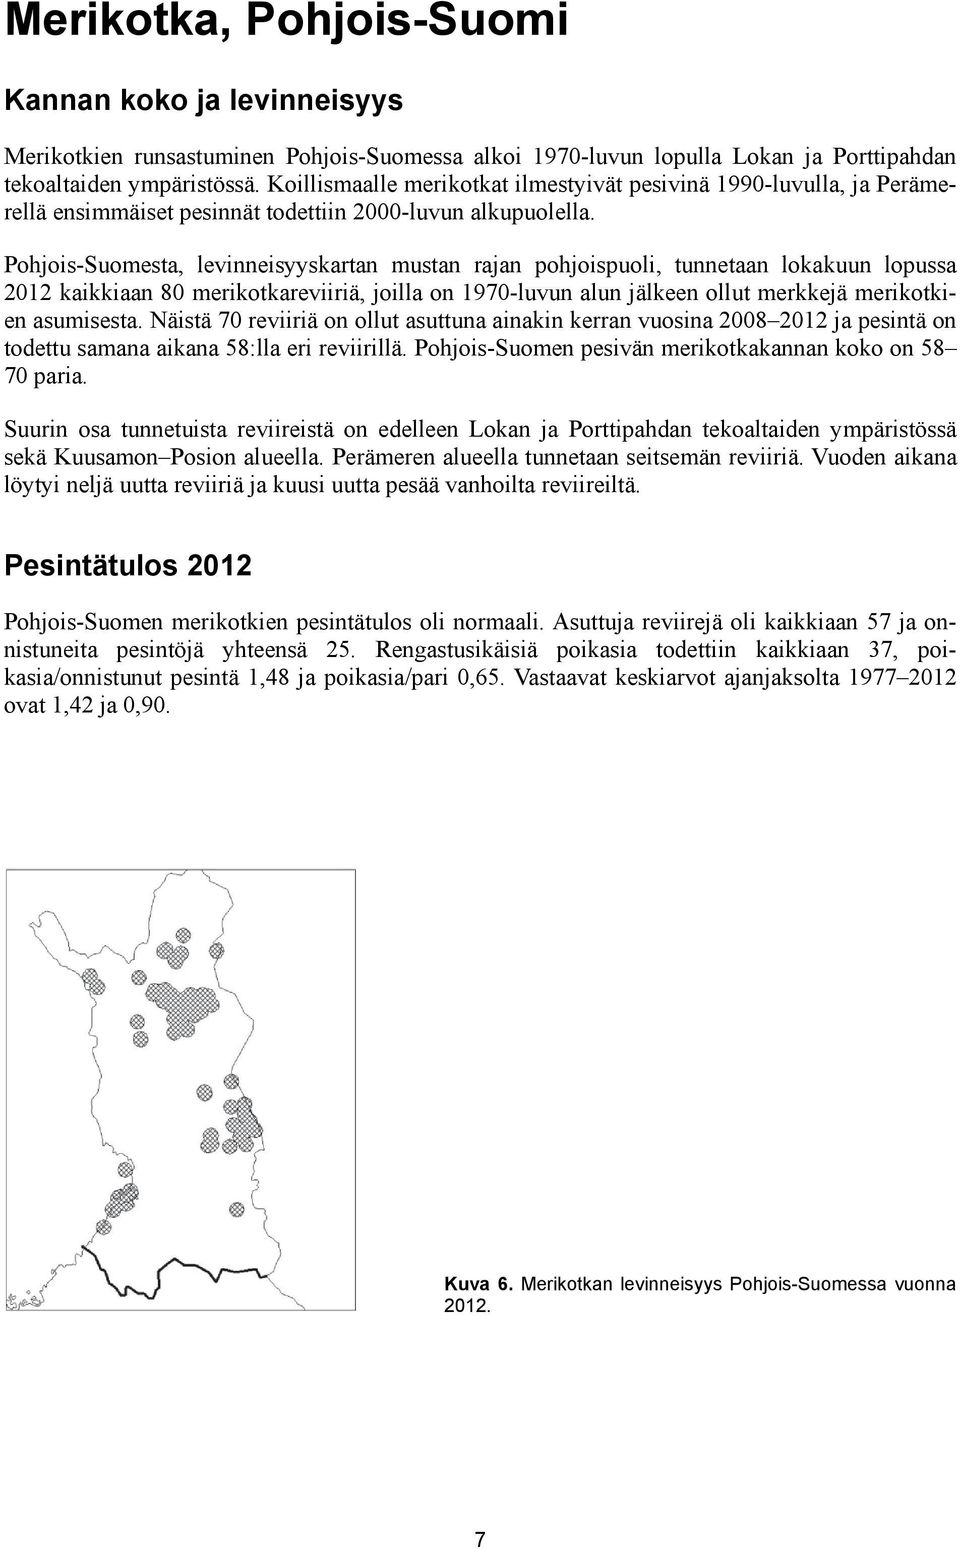 Pohjois-Suomesta, levinneisyyskartan mustan rajan pohjoispuoli, tunnetaan lokakuun lopussa 2012 kaikkiaan 80 merikotkareviiriä, joilla on 1970-luvun alun jälkeen ollut merkkejä merikotkien asumisesta.